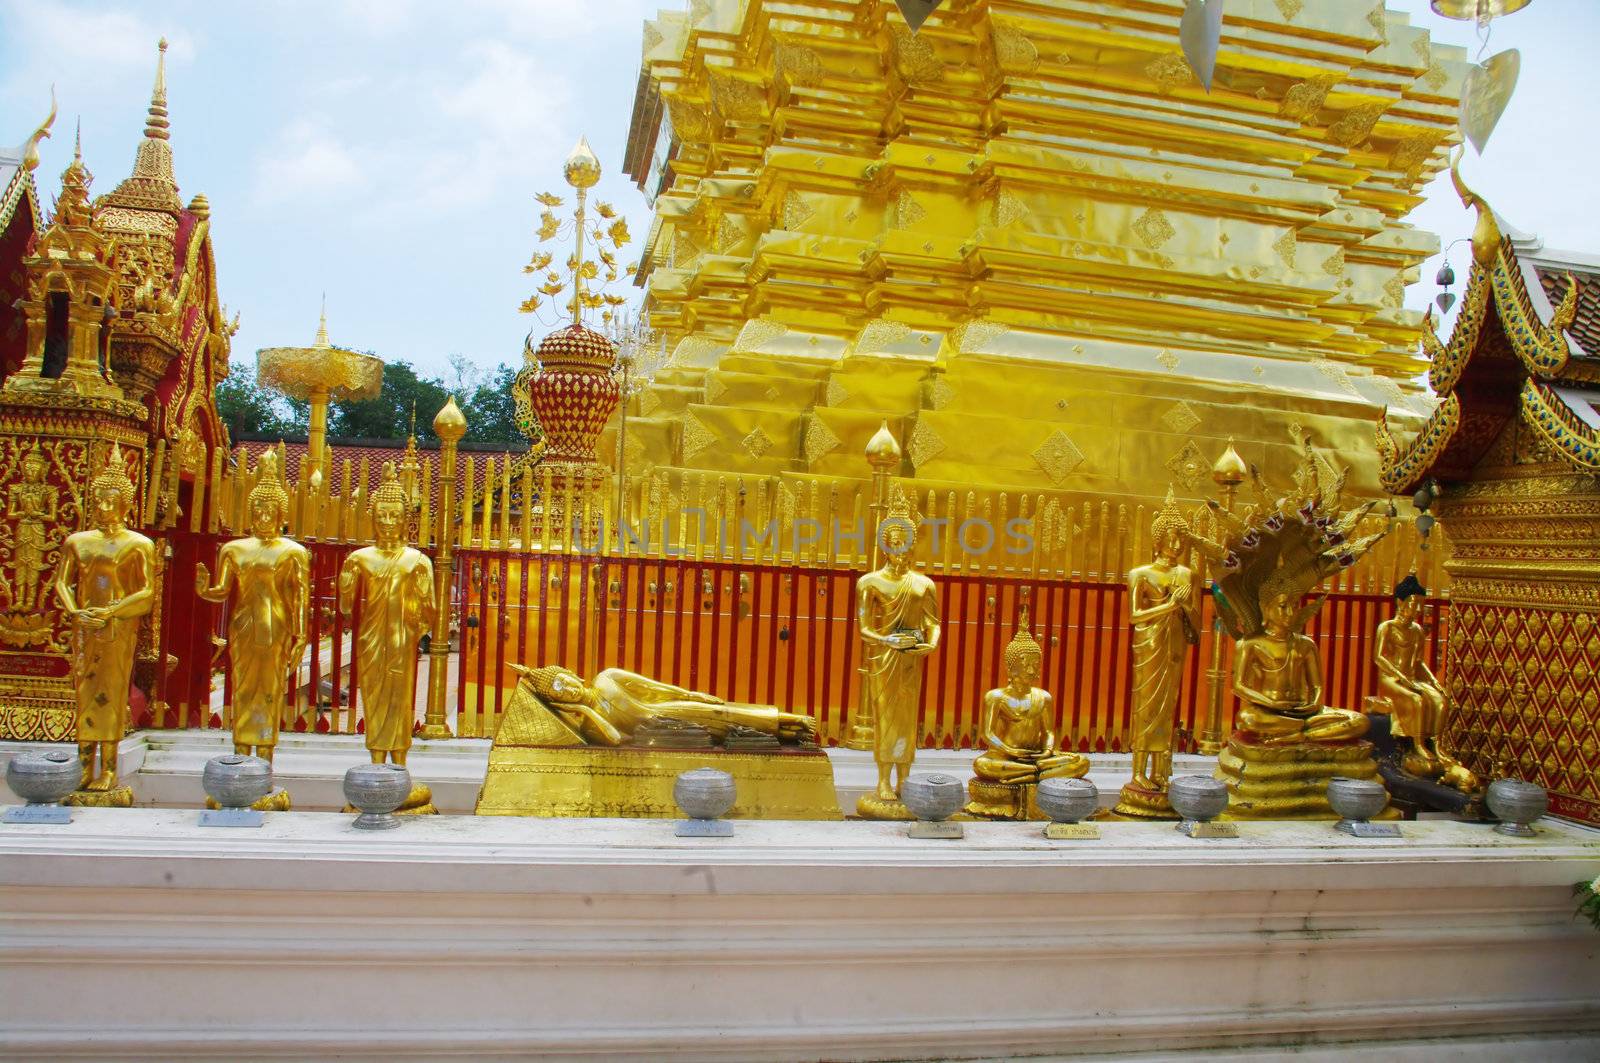 Chedi au temple de Wat Phrathat Doi Suthep by Duroc